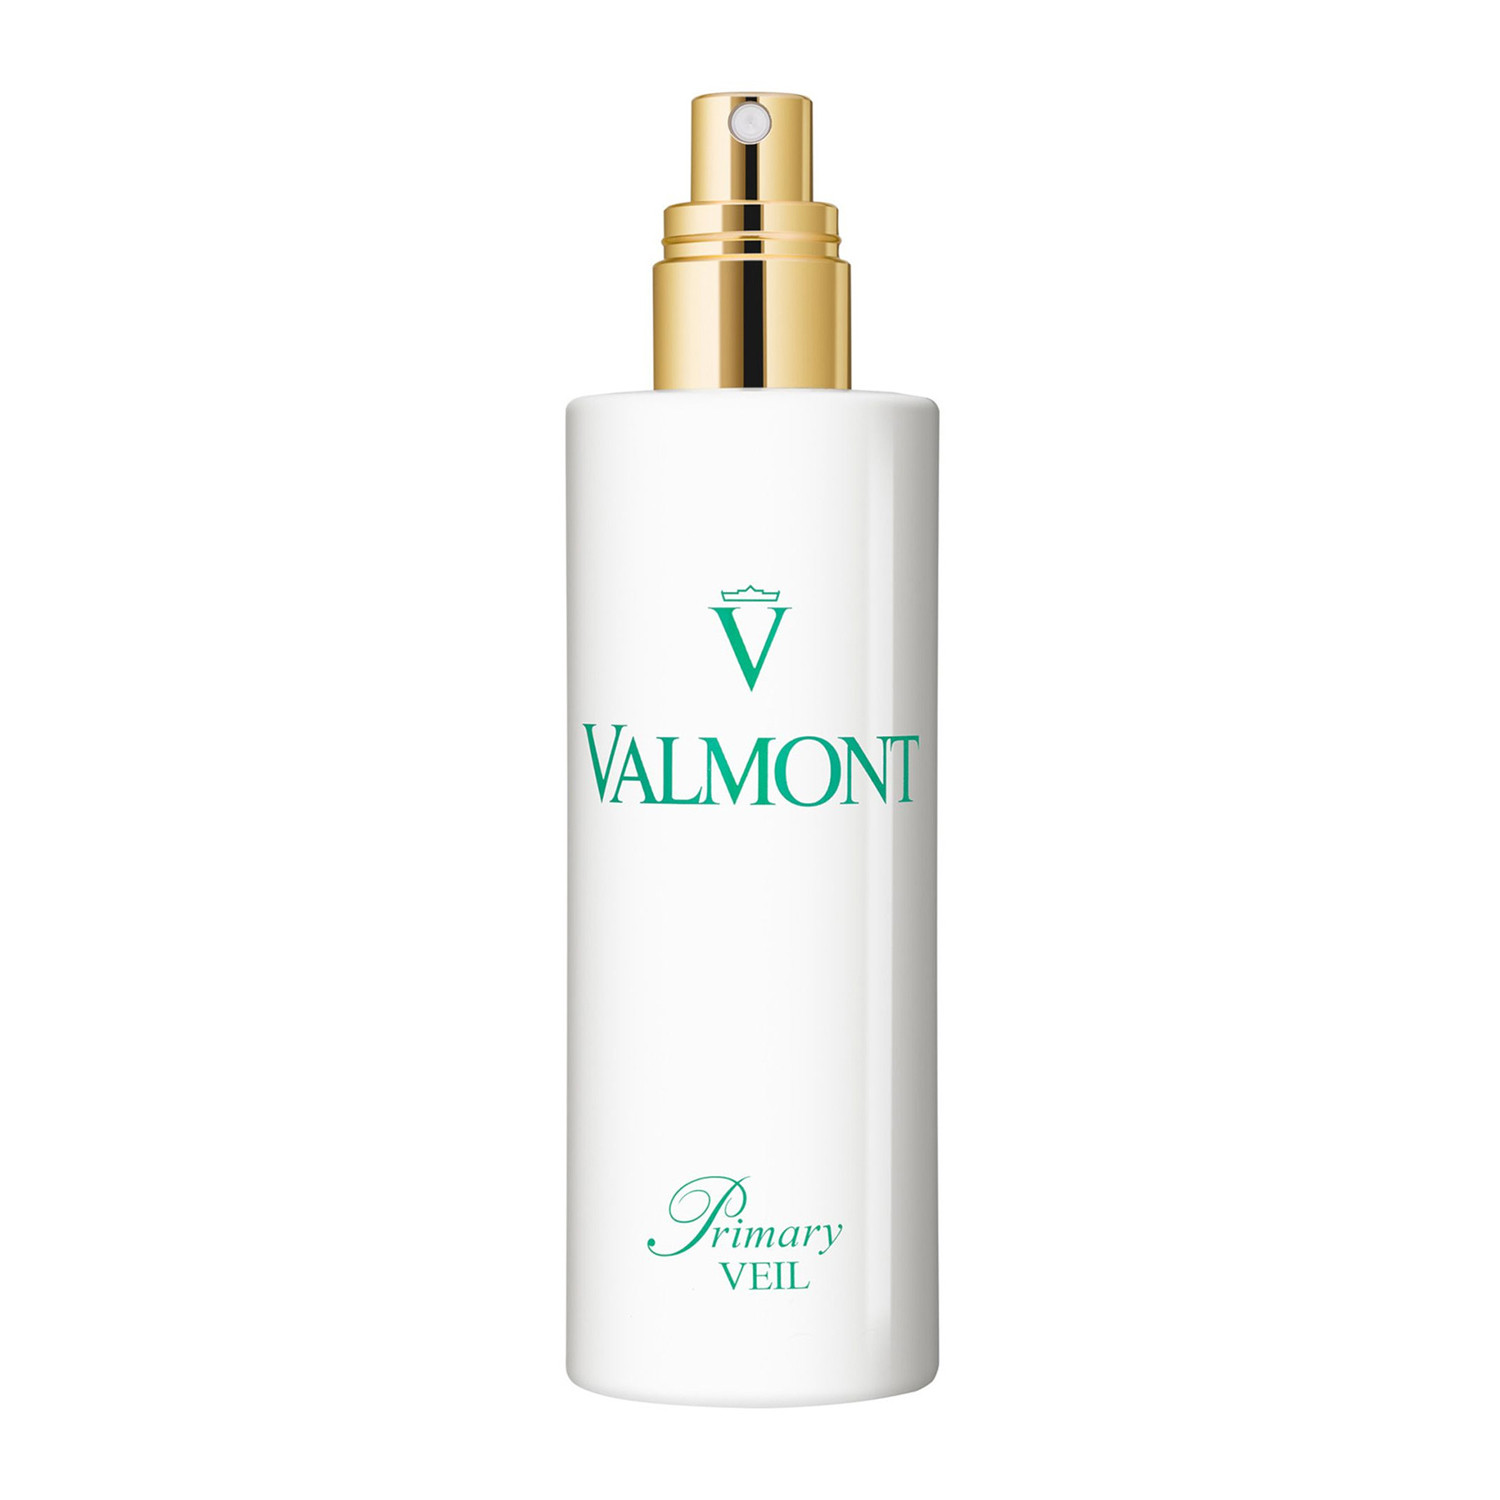 Отзывы о Valmont Primary Veil Успокаивающий балансирующий спрей